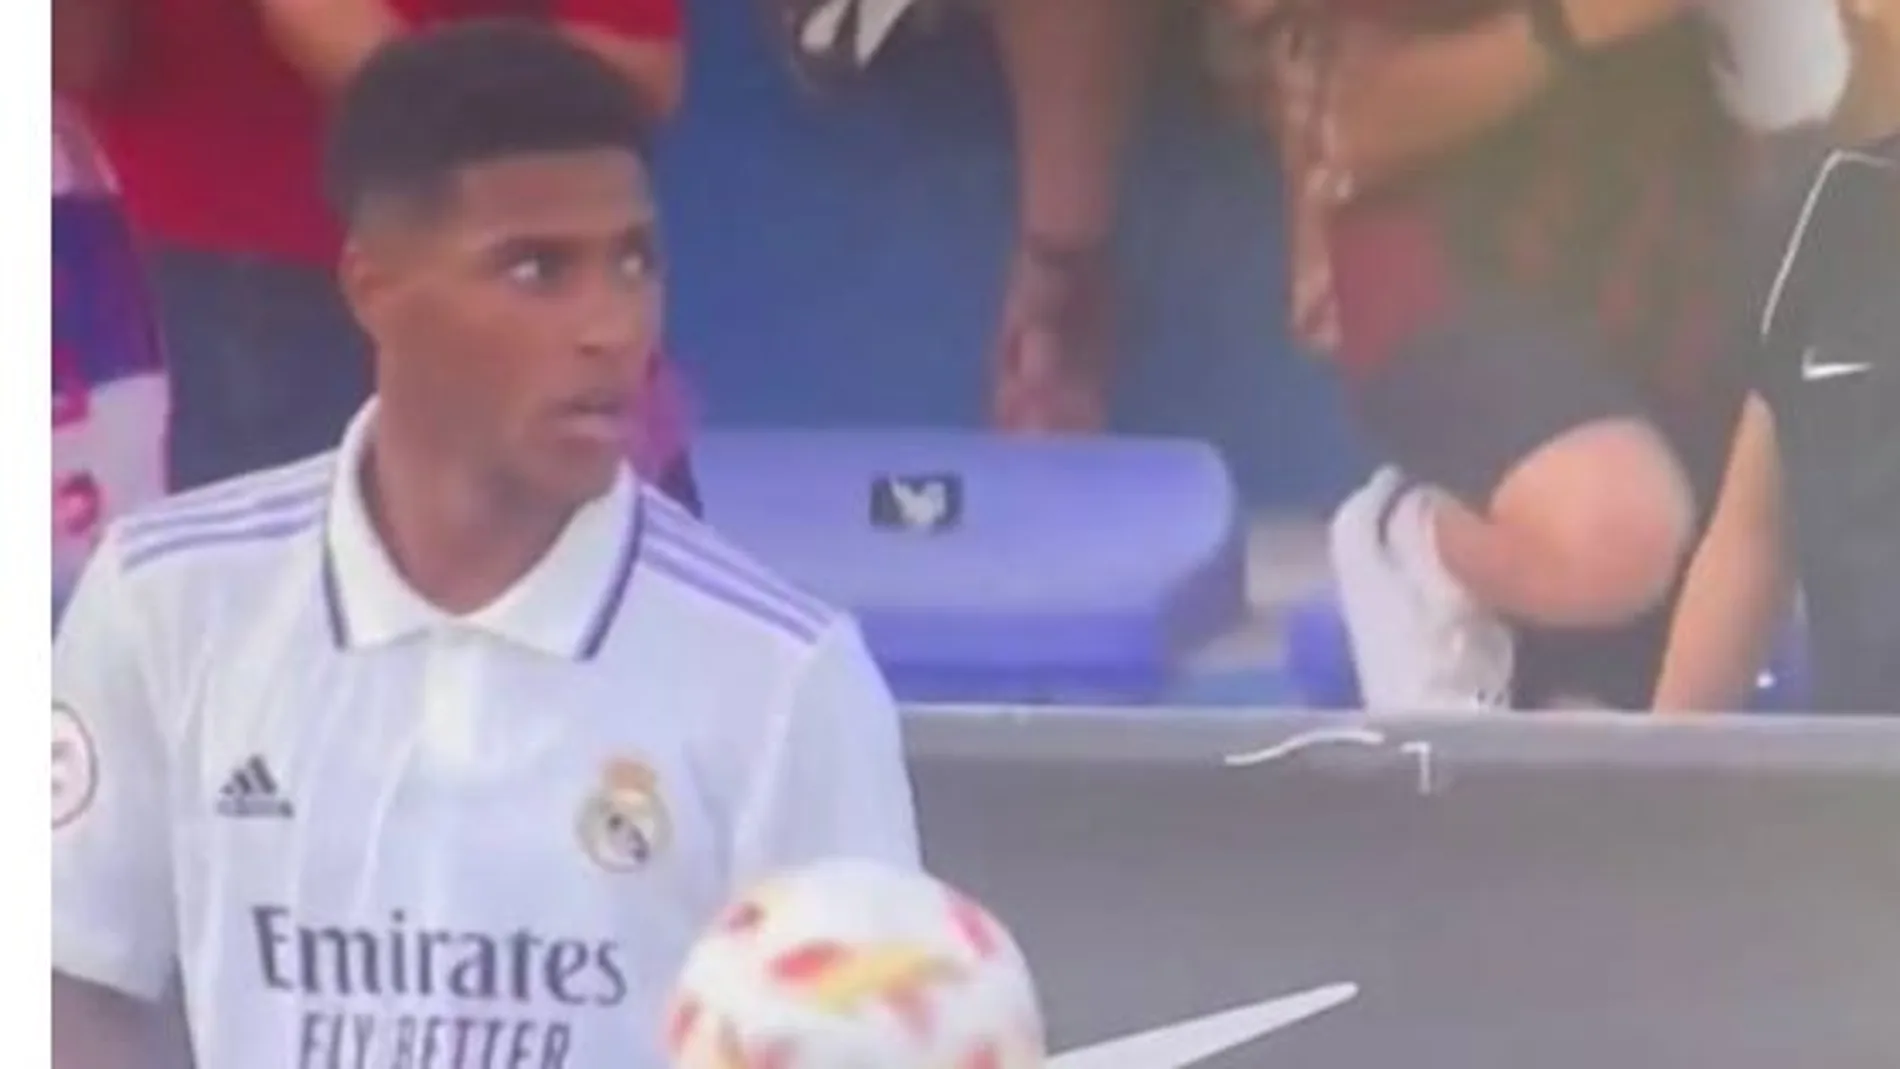 La reacción del jugador del Real Madrid tras ser insultado por su piel. "No te imaginas cuánto duele"